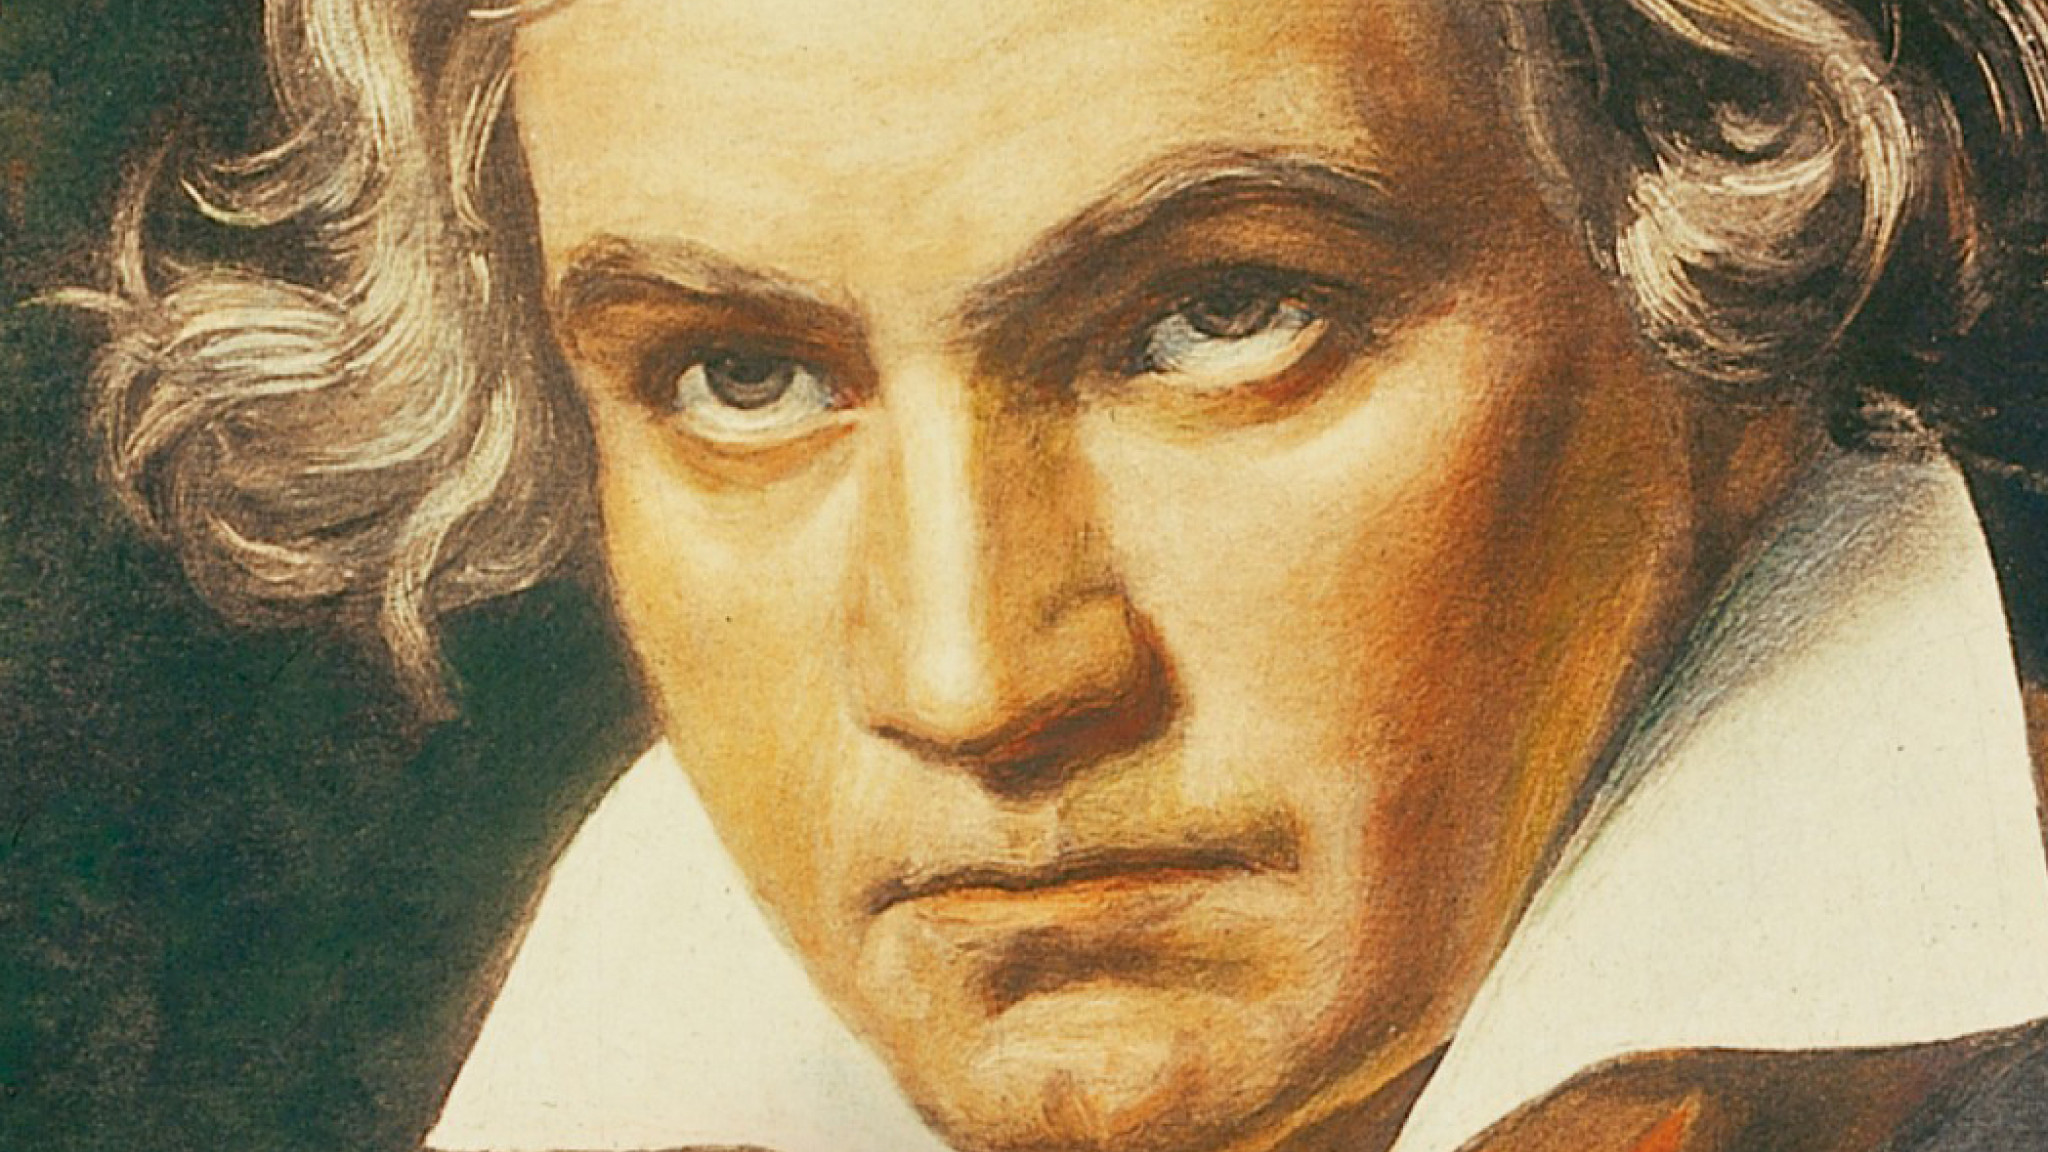 Neuer Spitzenreiter: Beethoven überholt Mozart